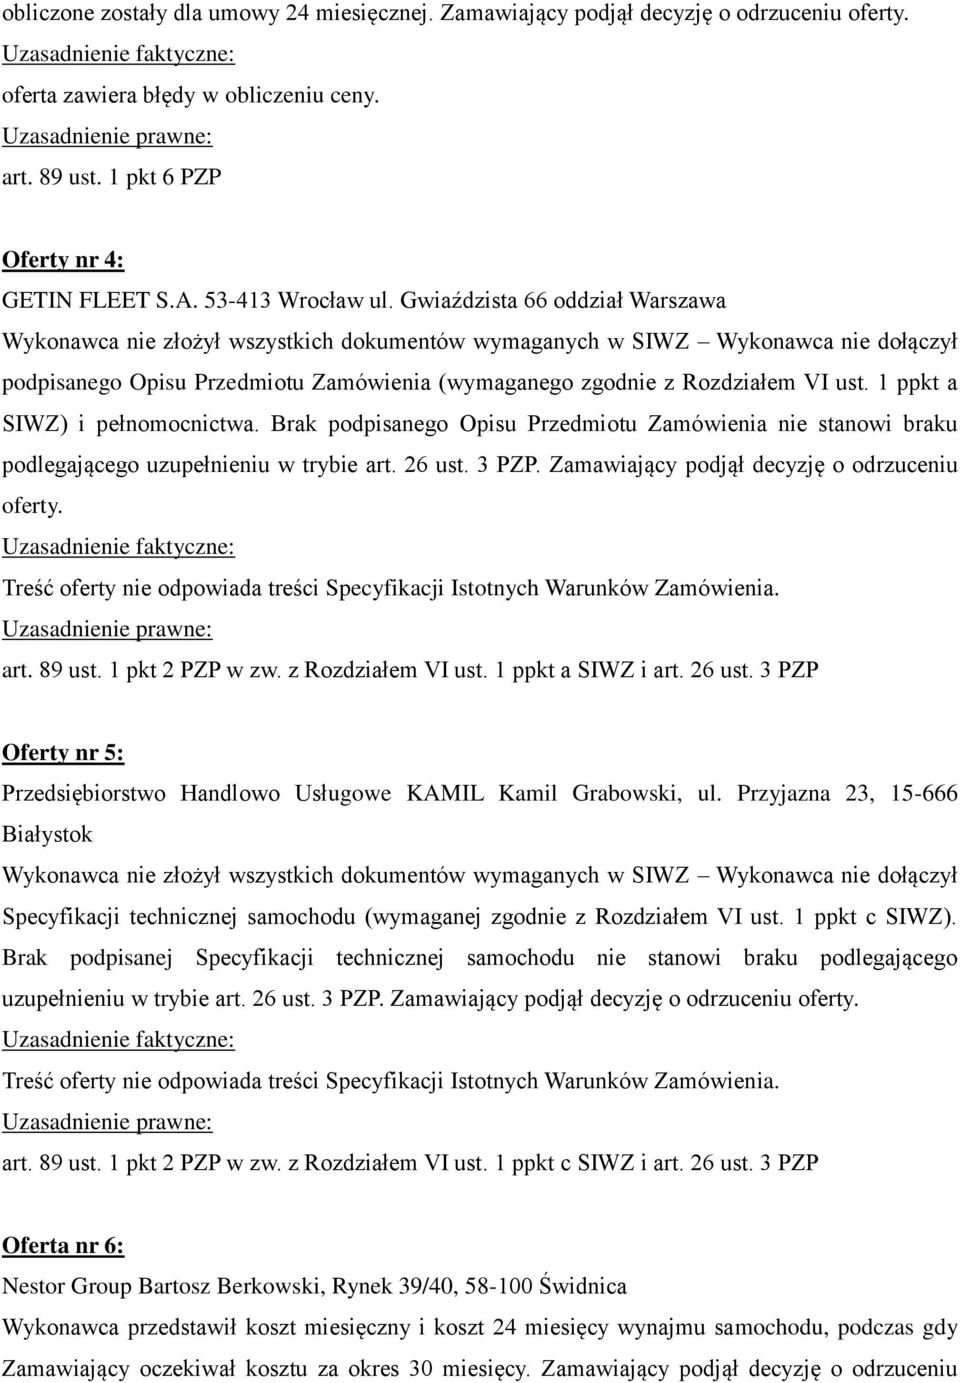 Gwiaździsta 66 oddział Warszawa Wykonawca nie złożył wszystkich dokumentów wymaganych w SIWZ Wykonawca nie dołączył podpisanego Opisu Przedmiotu Zamówienia (wymaganego zgodnie z Rozdziałem VI ust.